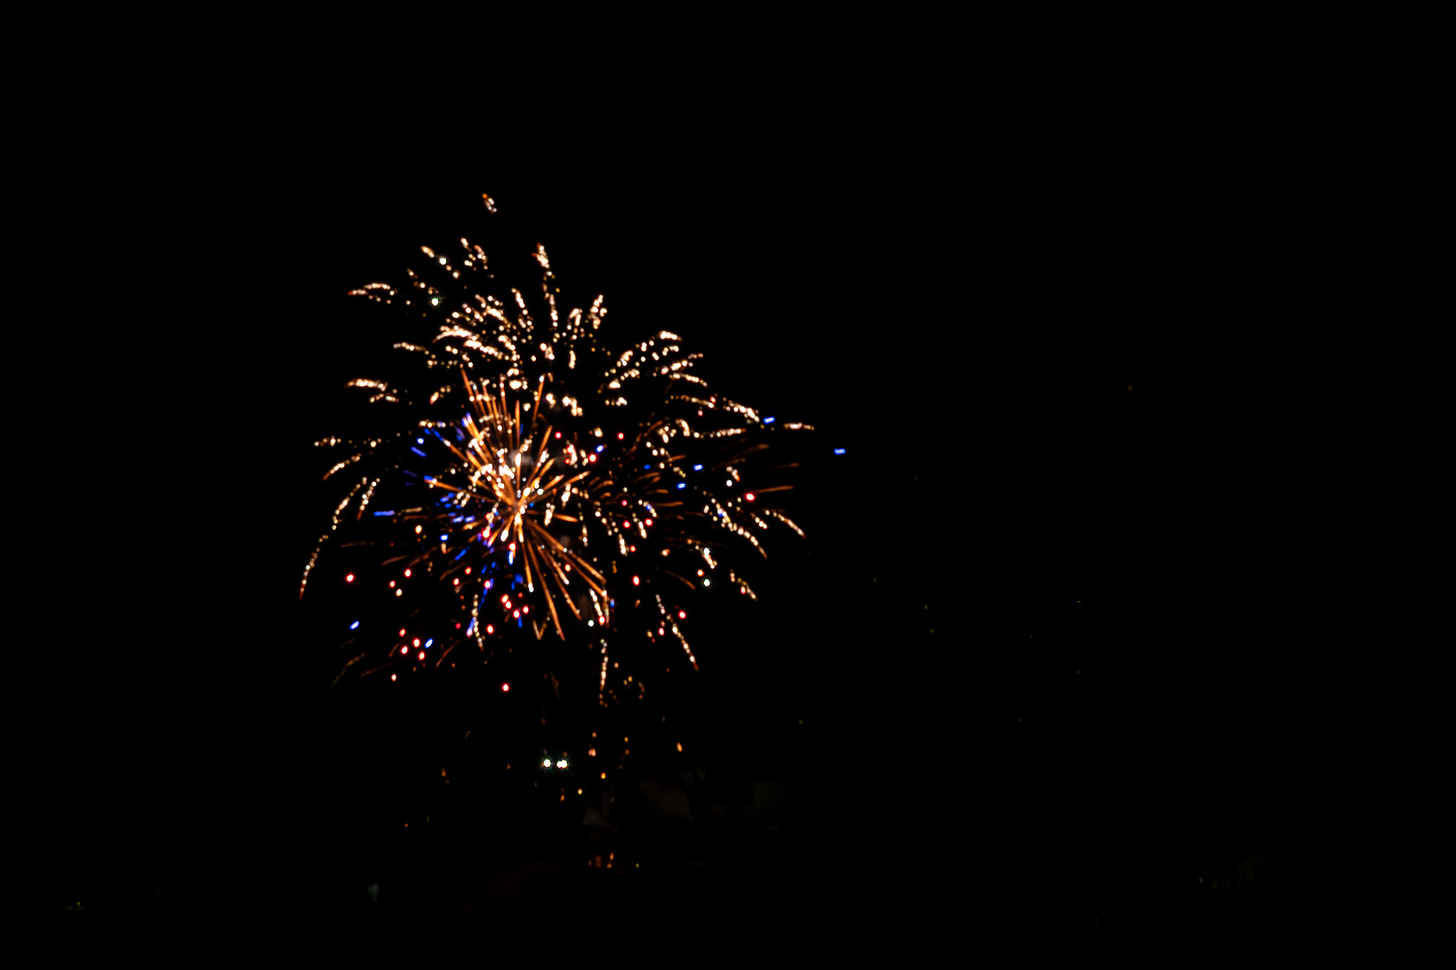 Fireworks exploding in the dark night sky in multi- colors 